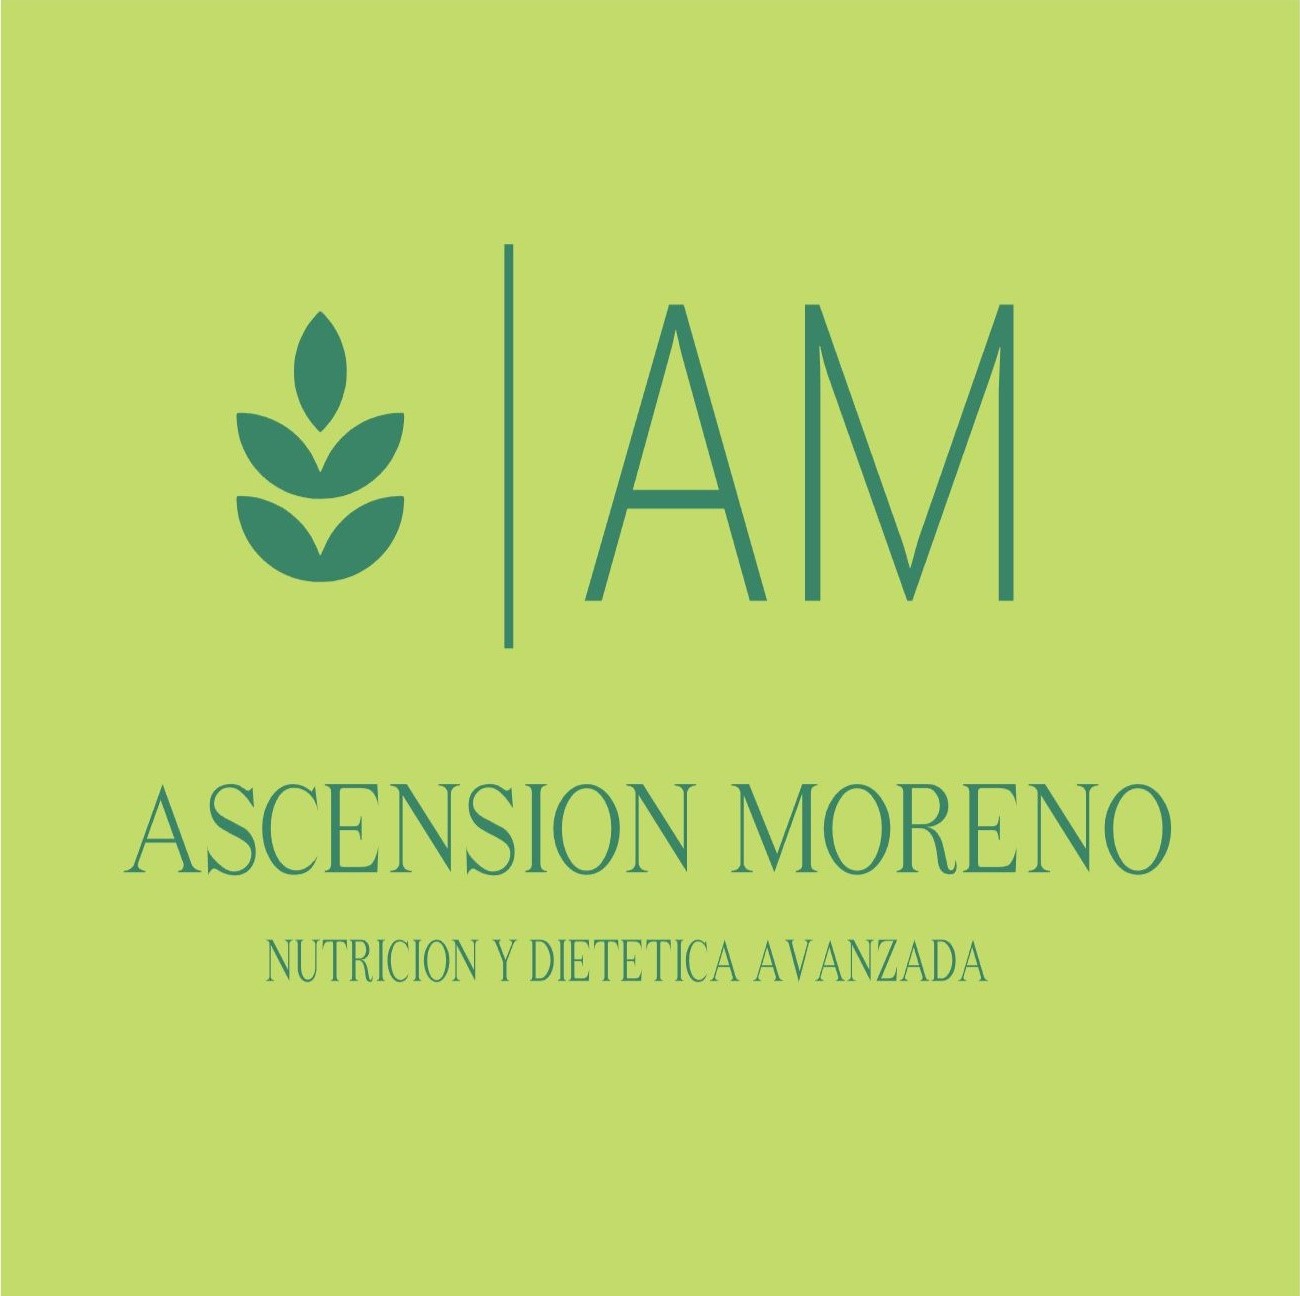 Entrenador Personal Murcia El logo de ascensión moreno.